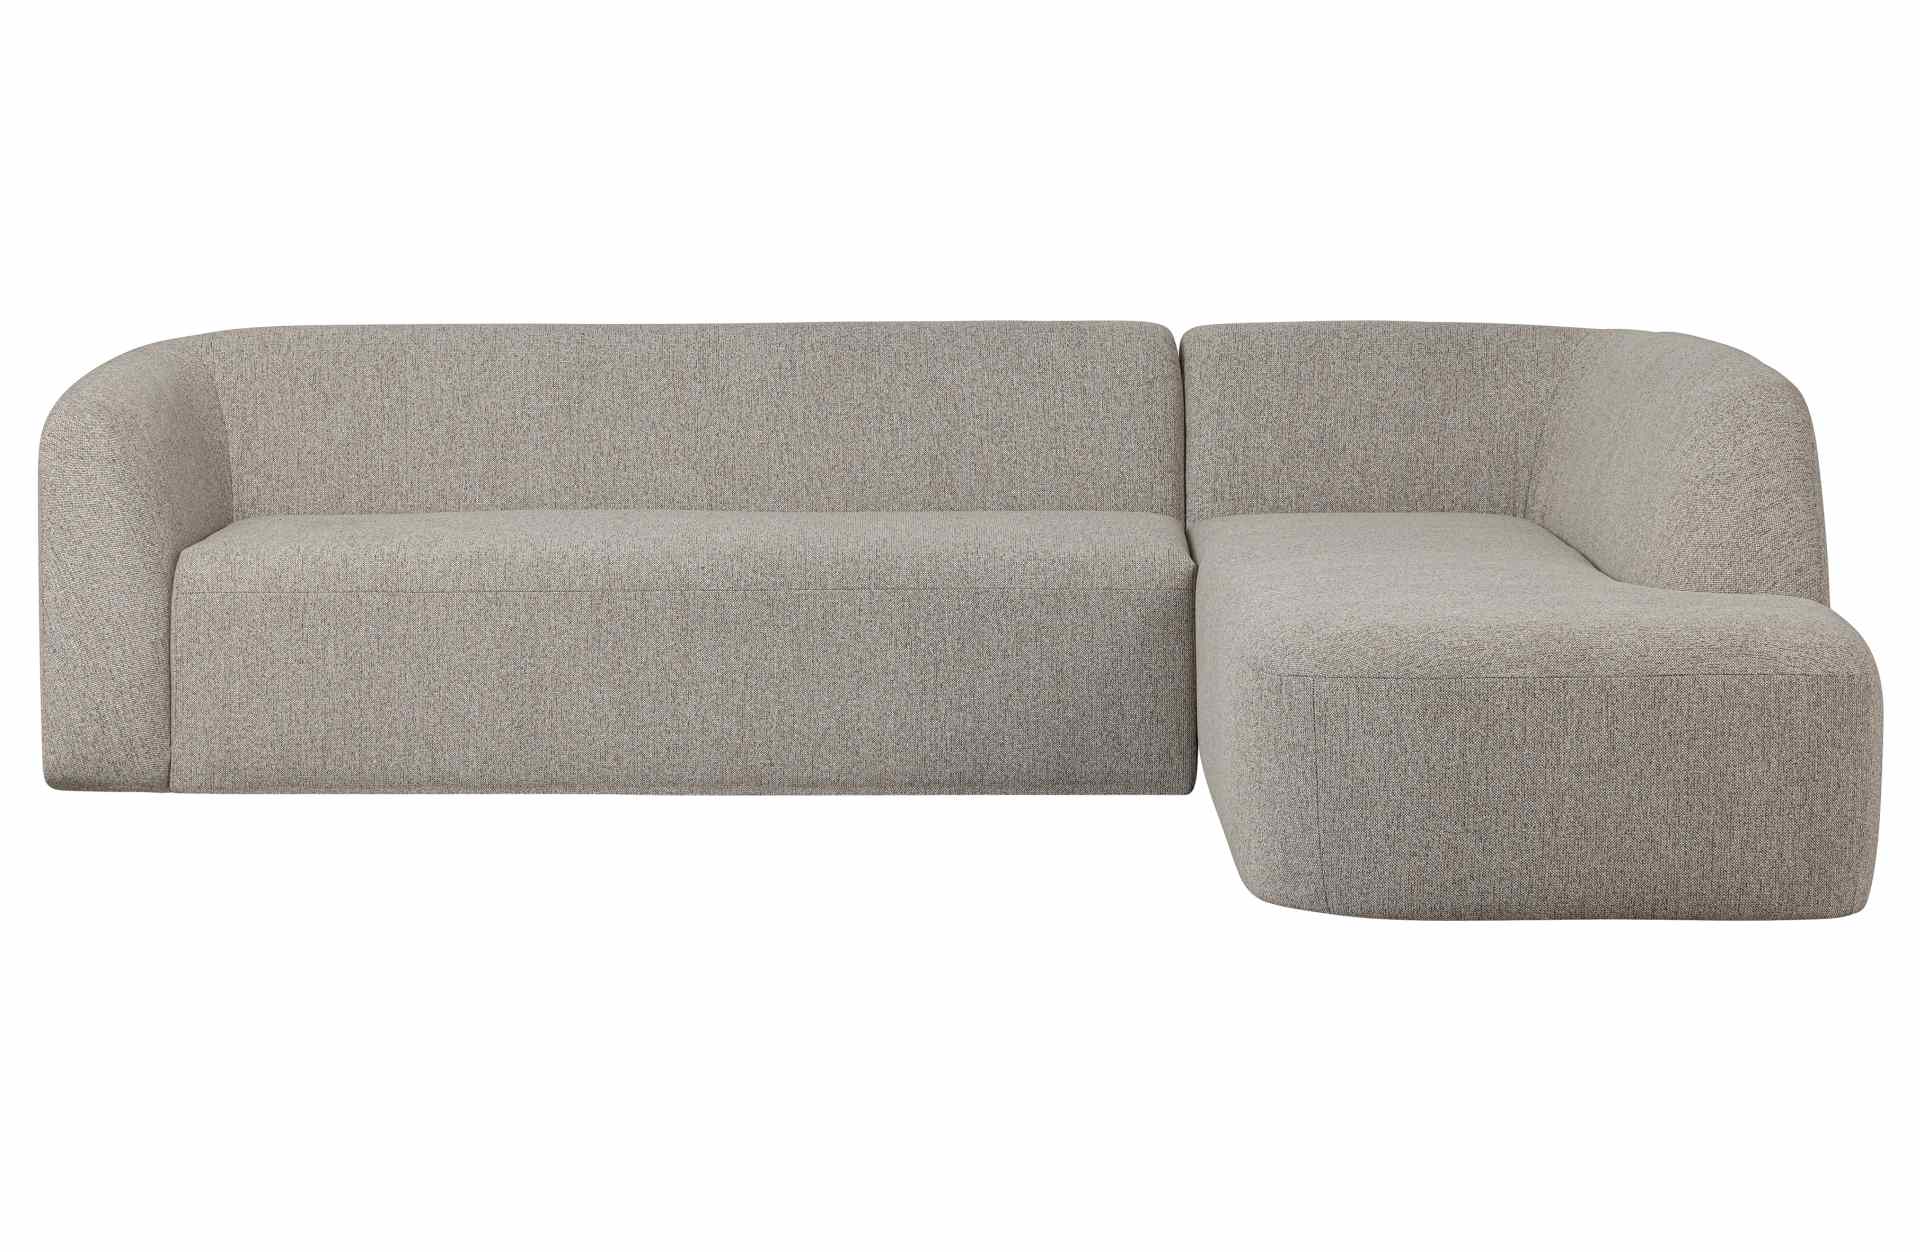 Das Ecksofa Sloping wurde aus bequemen Stoff gefertigt, welcher einen Hellgrauen Farbton besitzt. Das Sofa ist ein echter Hingucker für dein Zuhause, denn es hat ein modernes Design, welches zu jeder Inneneinrichtung passt.